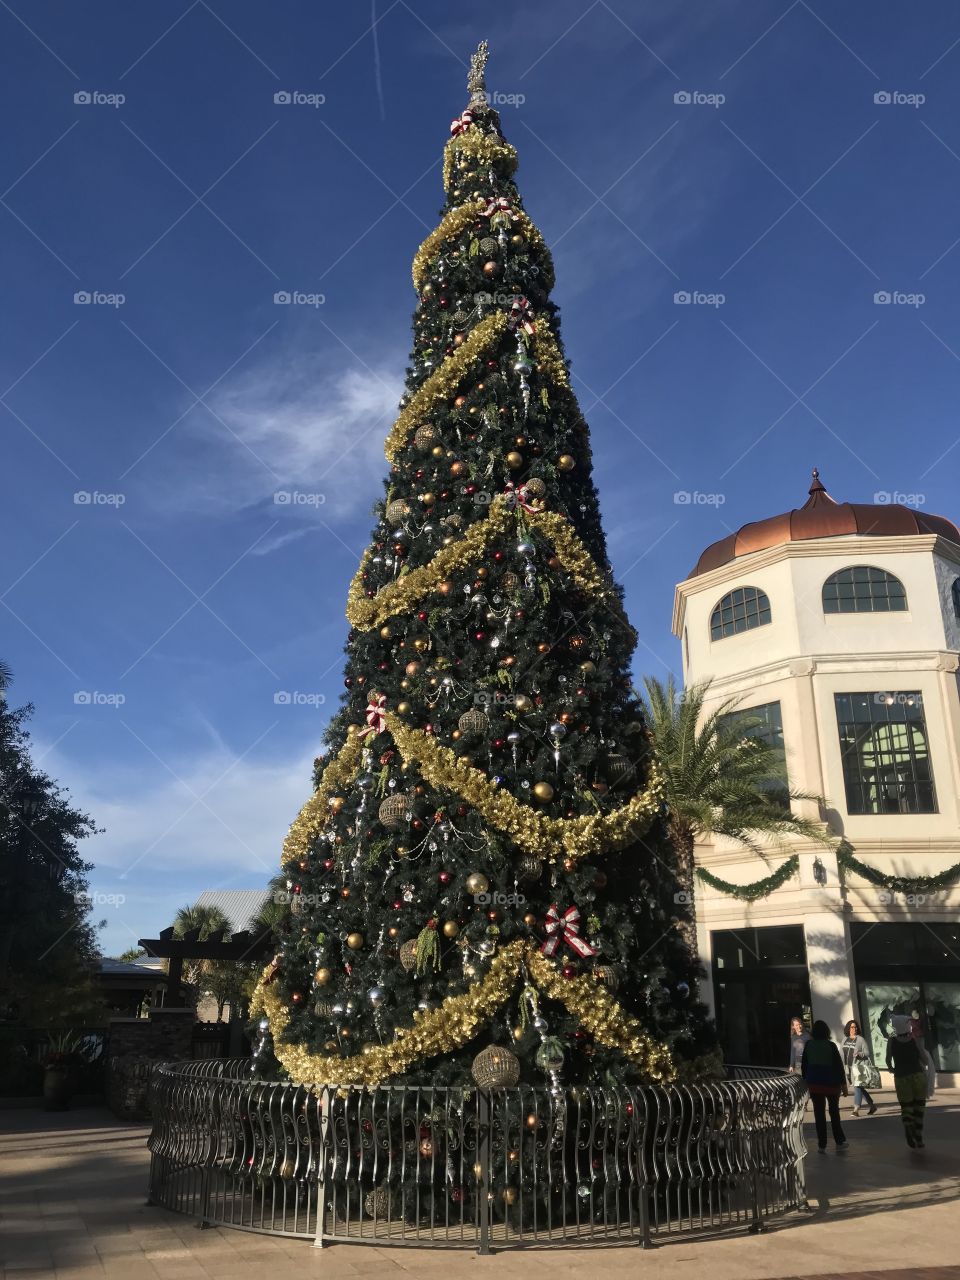 Disne Springs Christmas tree